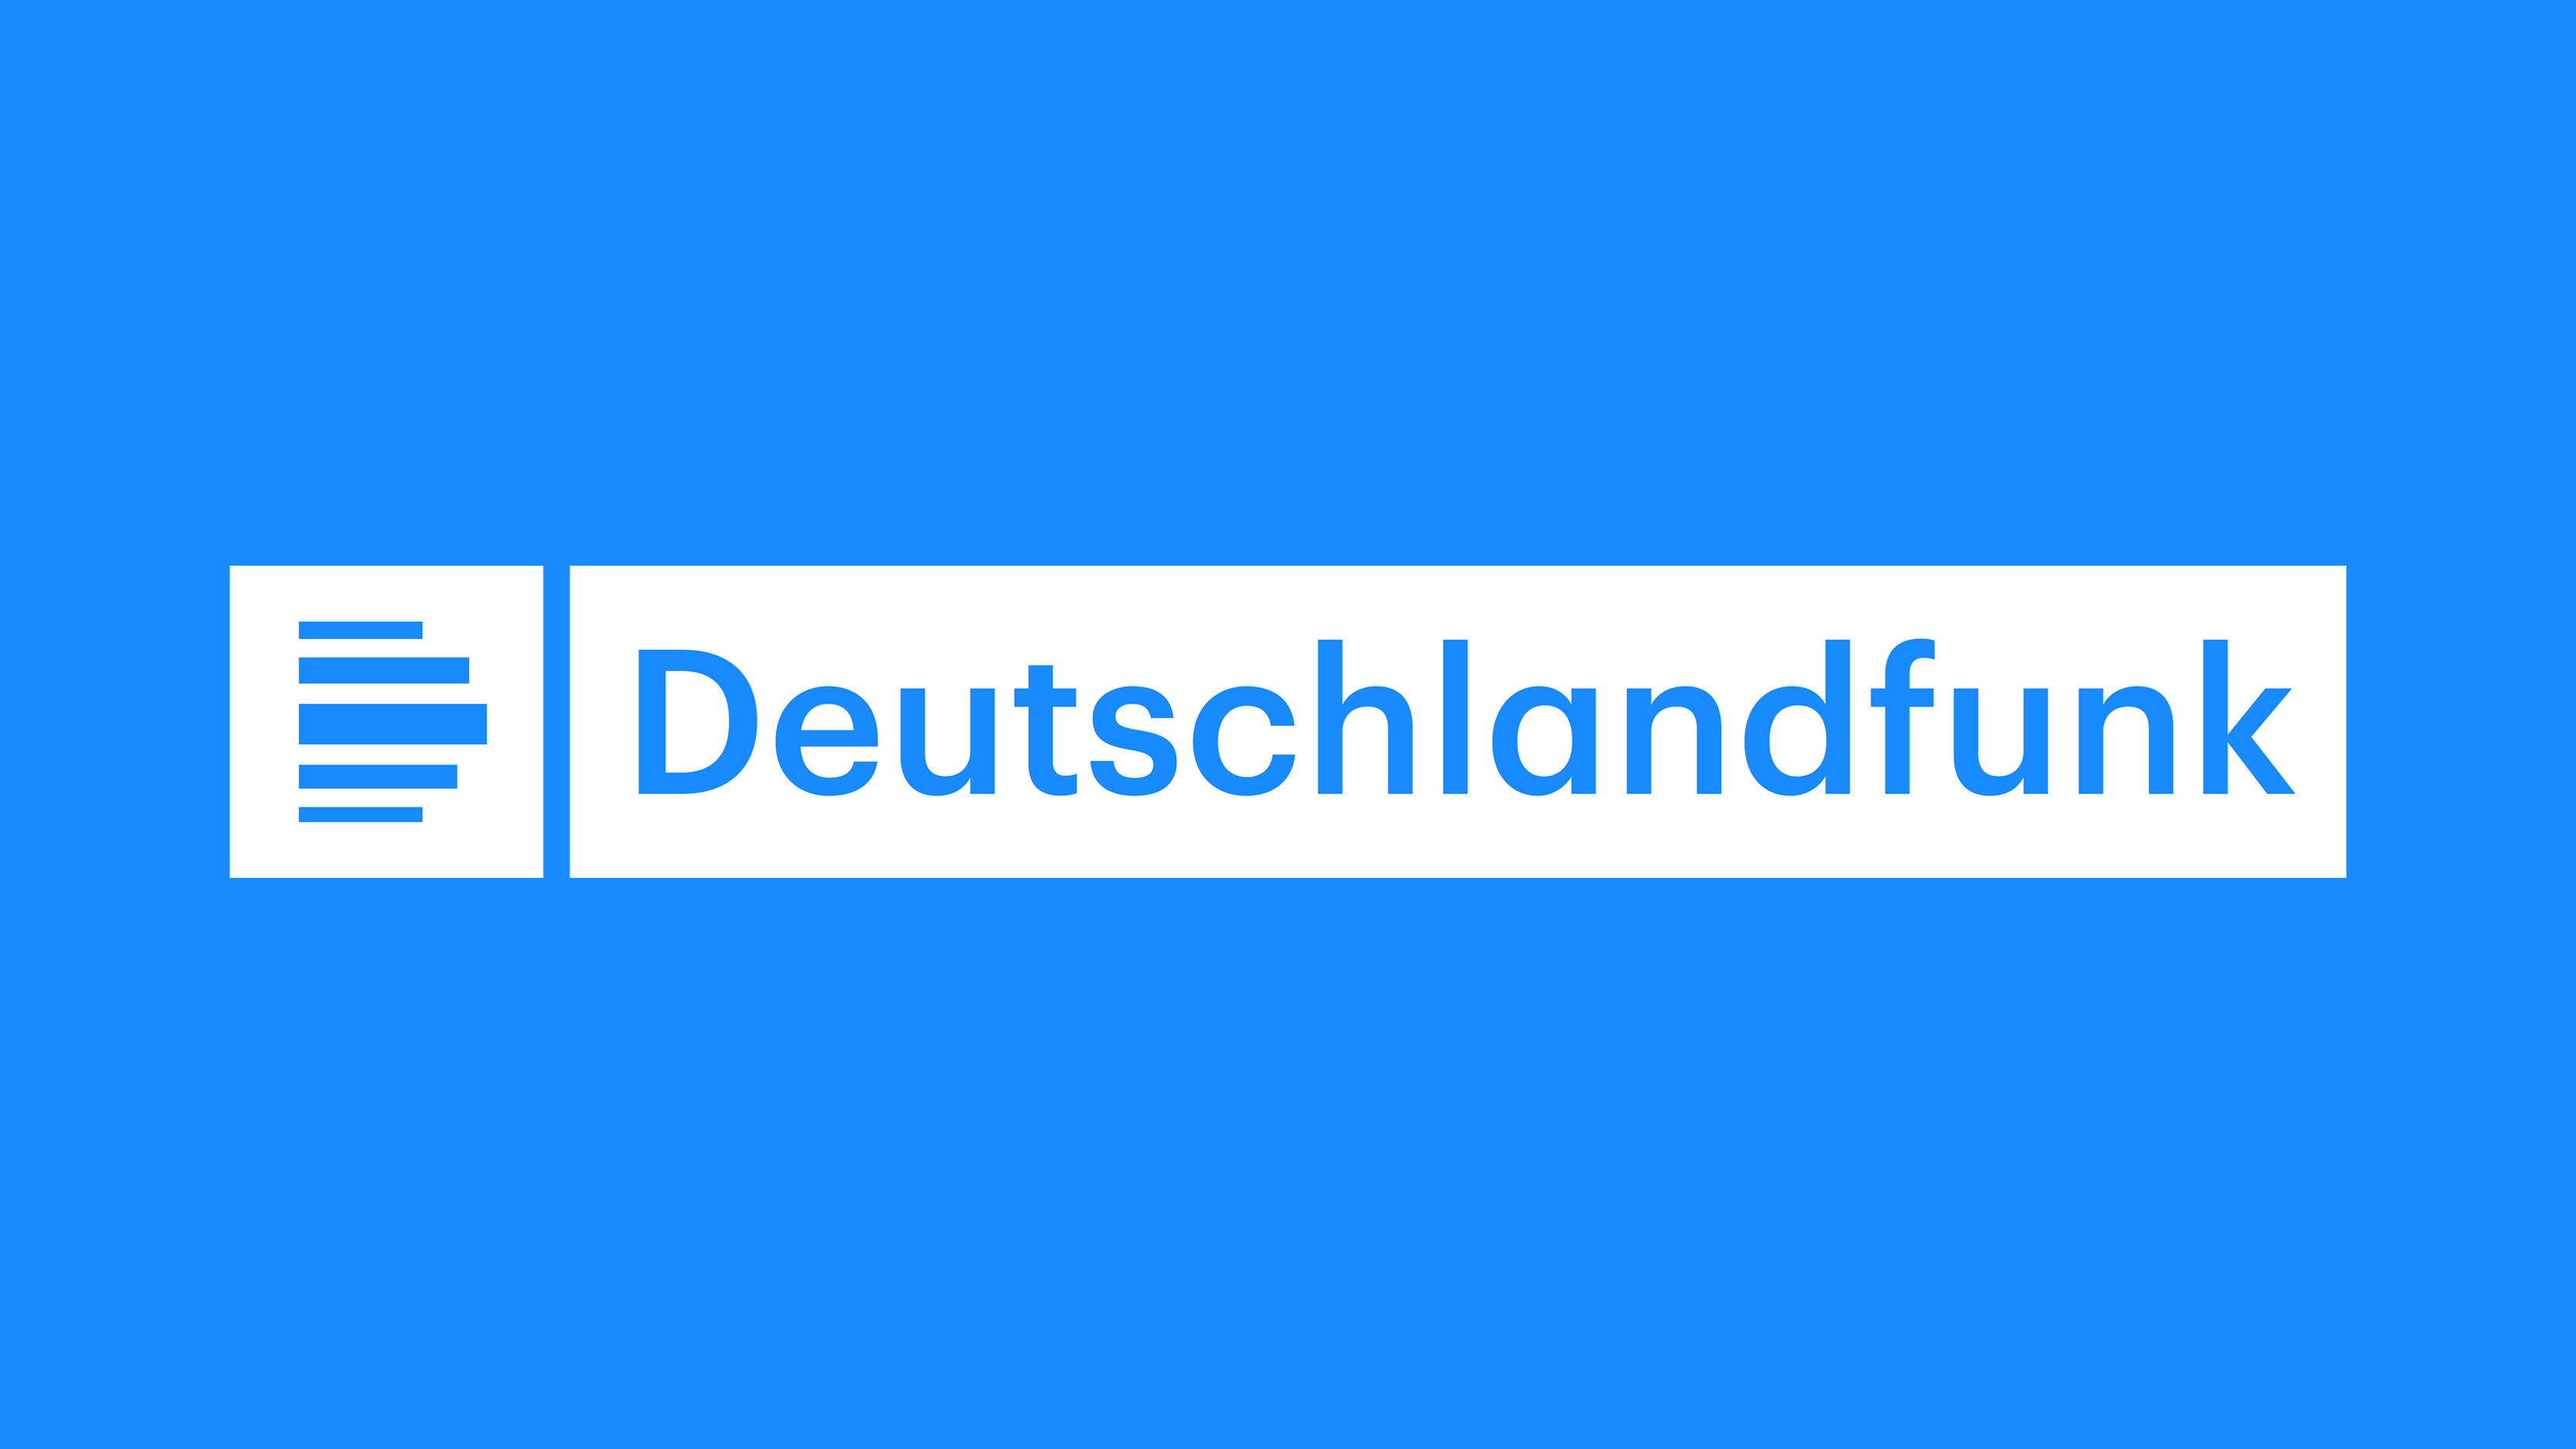 www.deutschlandfunk.de